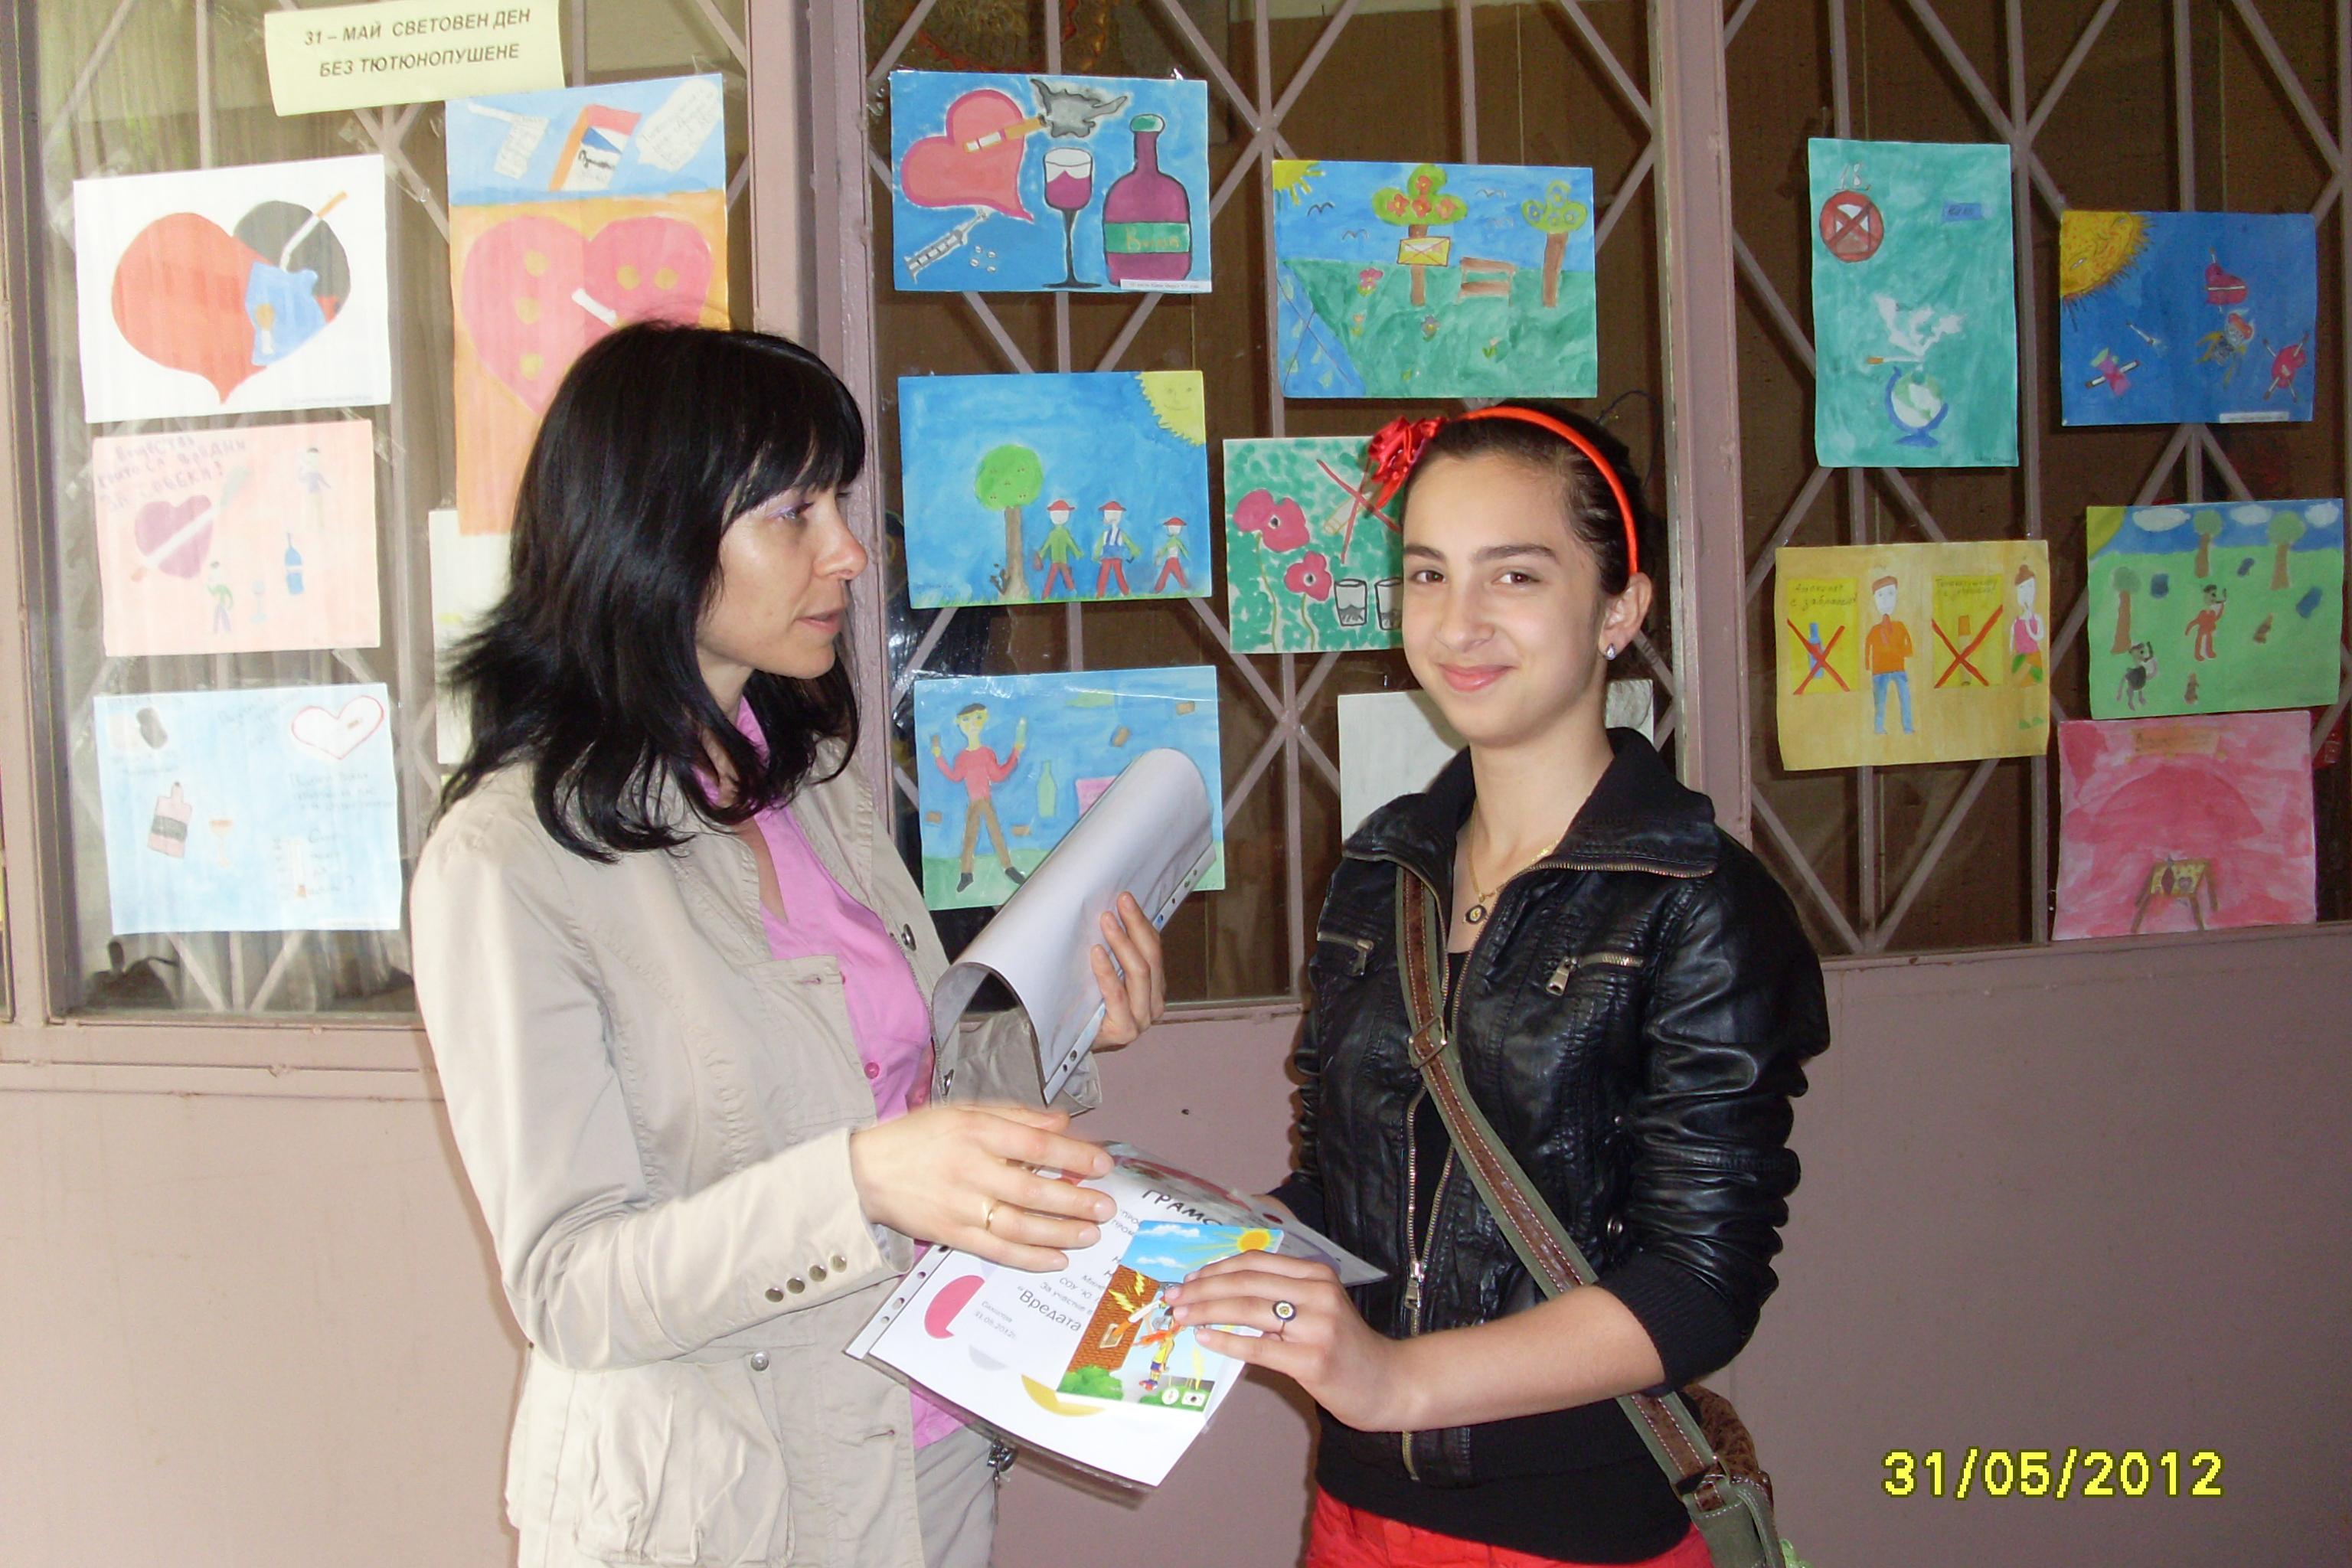 СОУ „Ю. Гагарин” и ОСУ „Дръстър” представиха изложби с рисунки на тема „Вредата от цигарите”